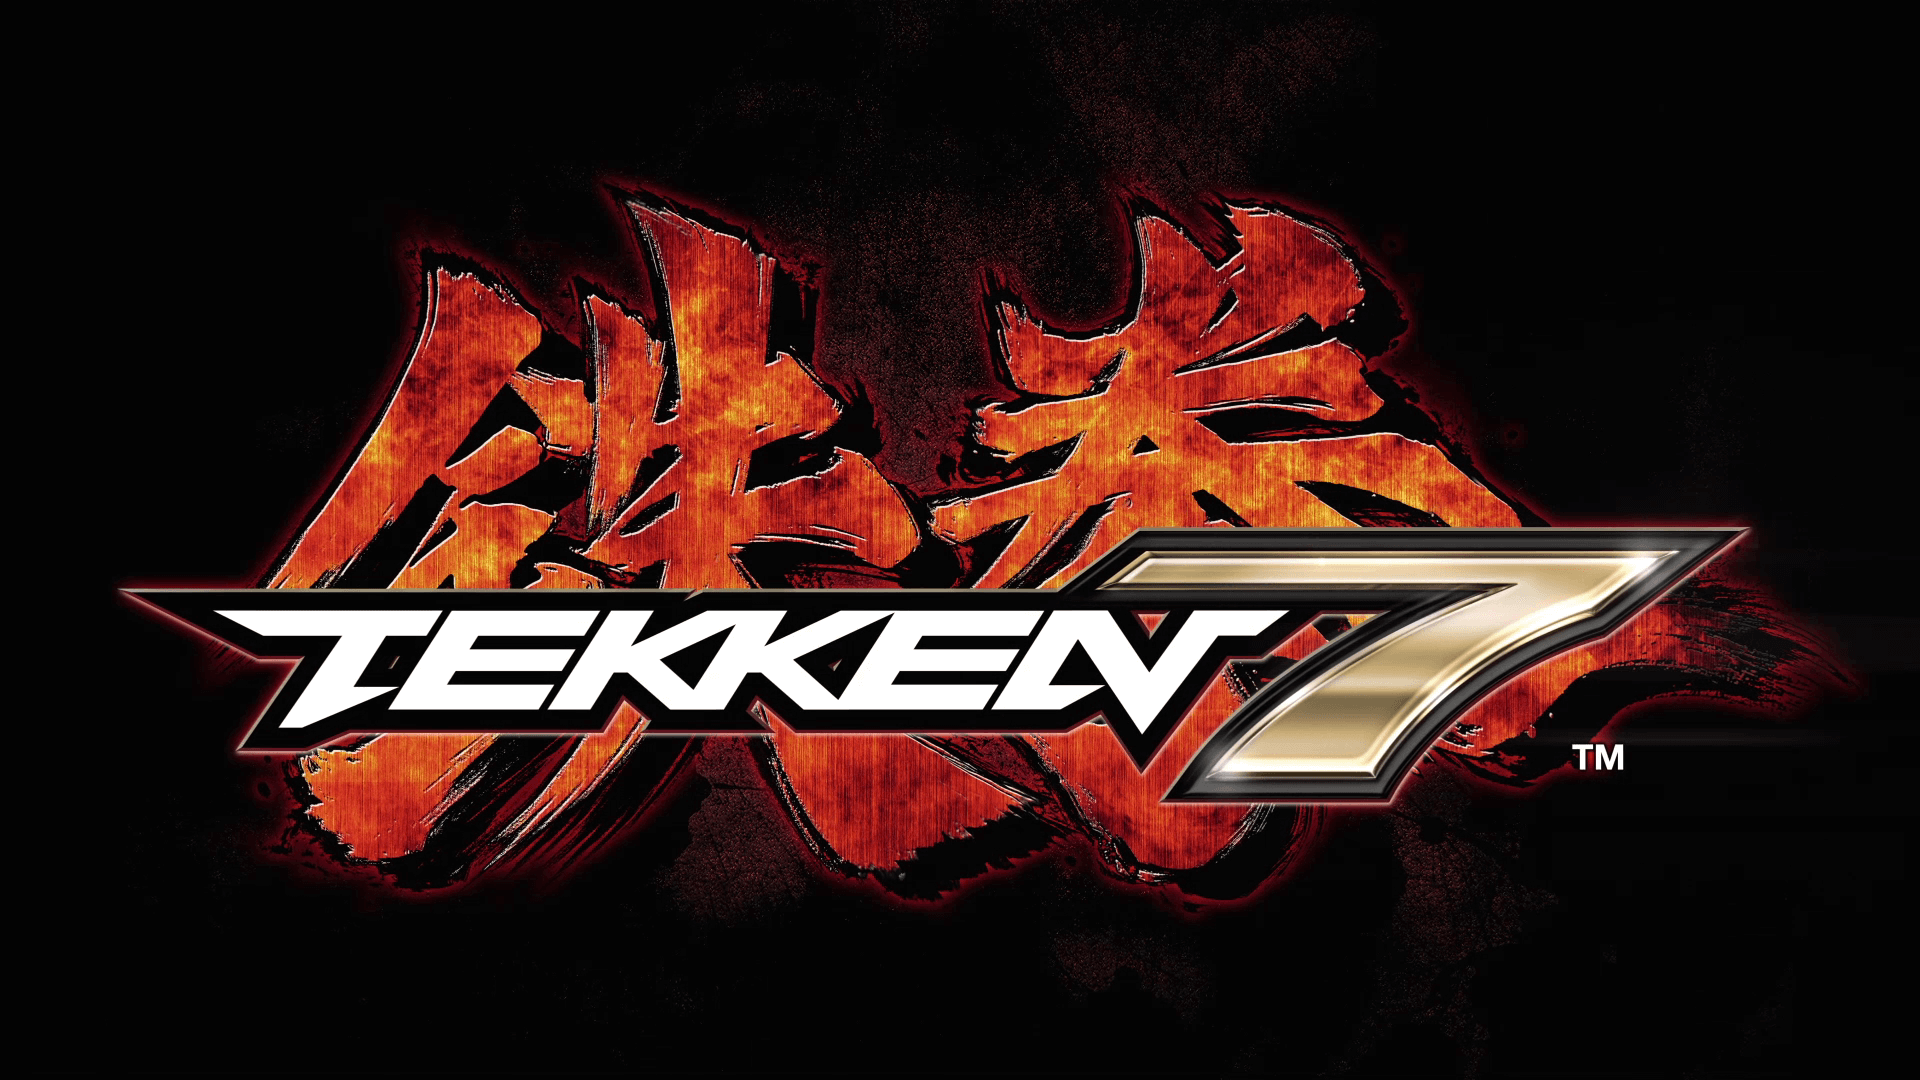 We! Meo-IL wins a new round of Tekken Online Challenge